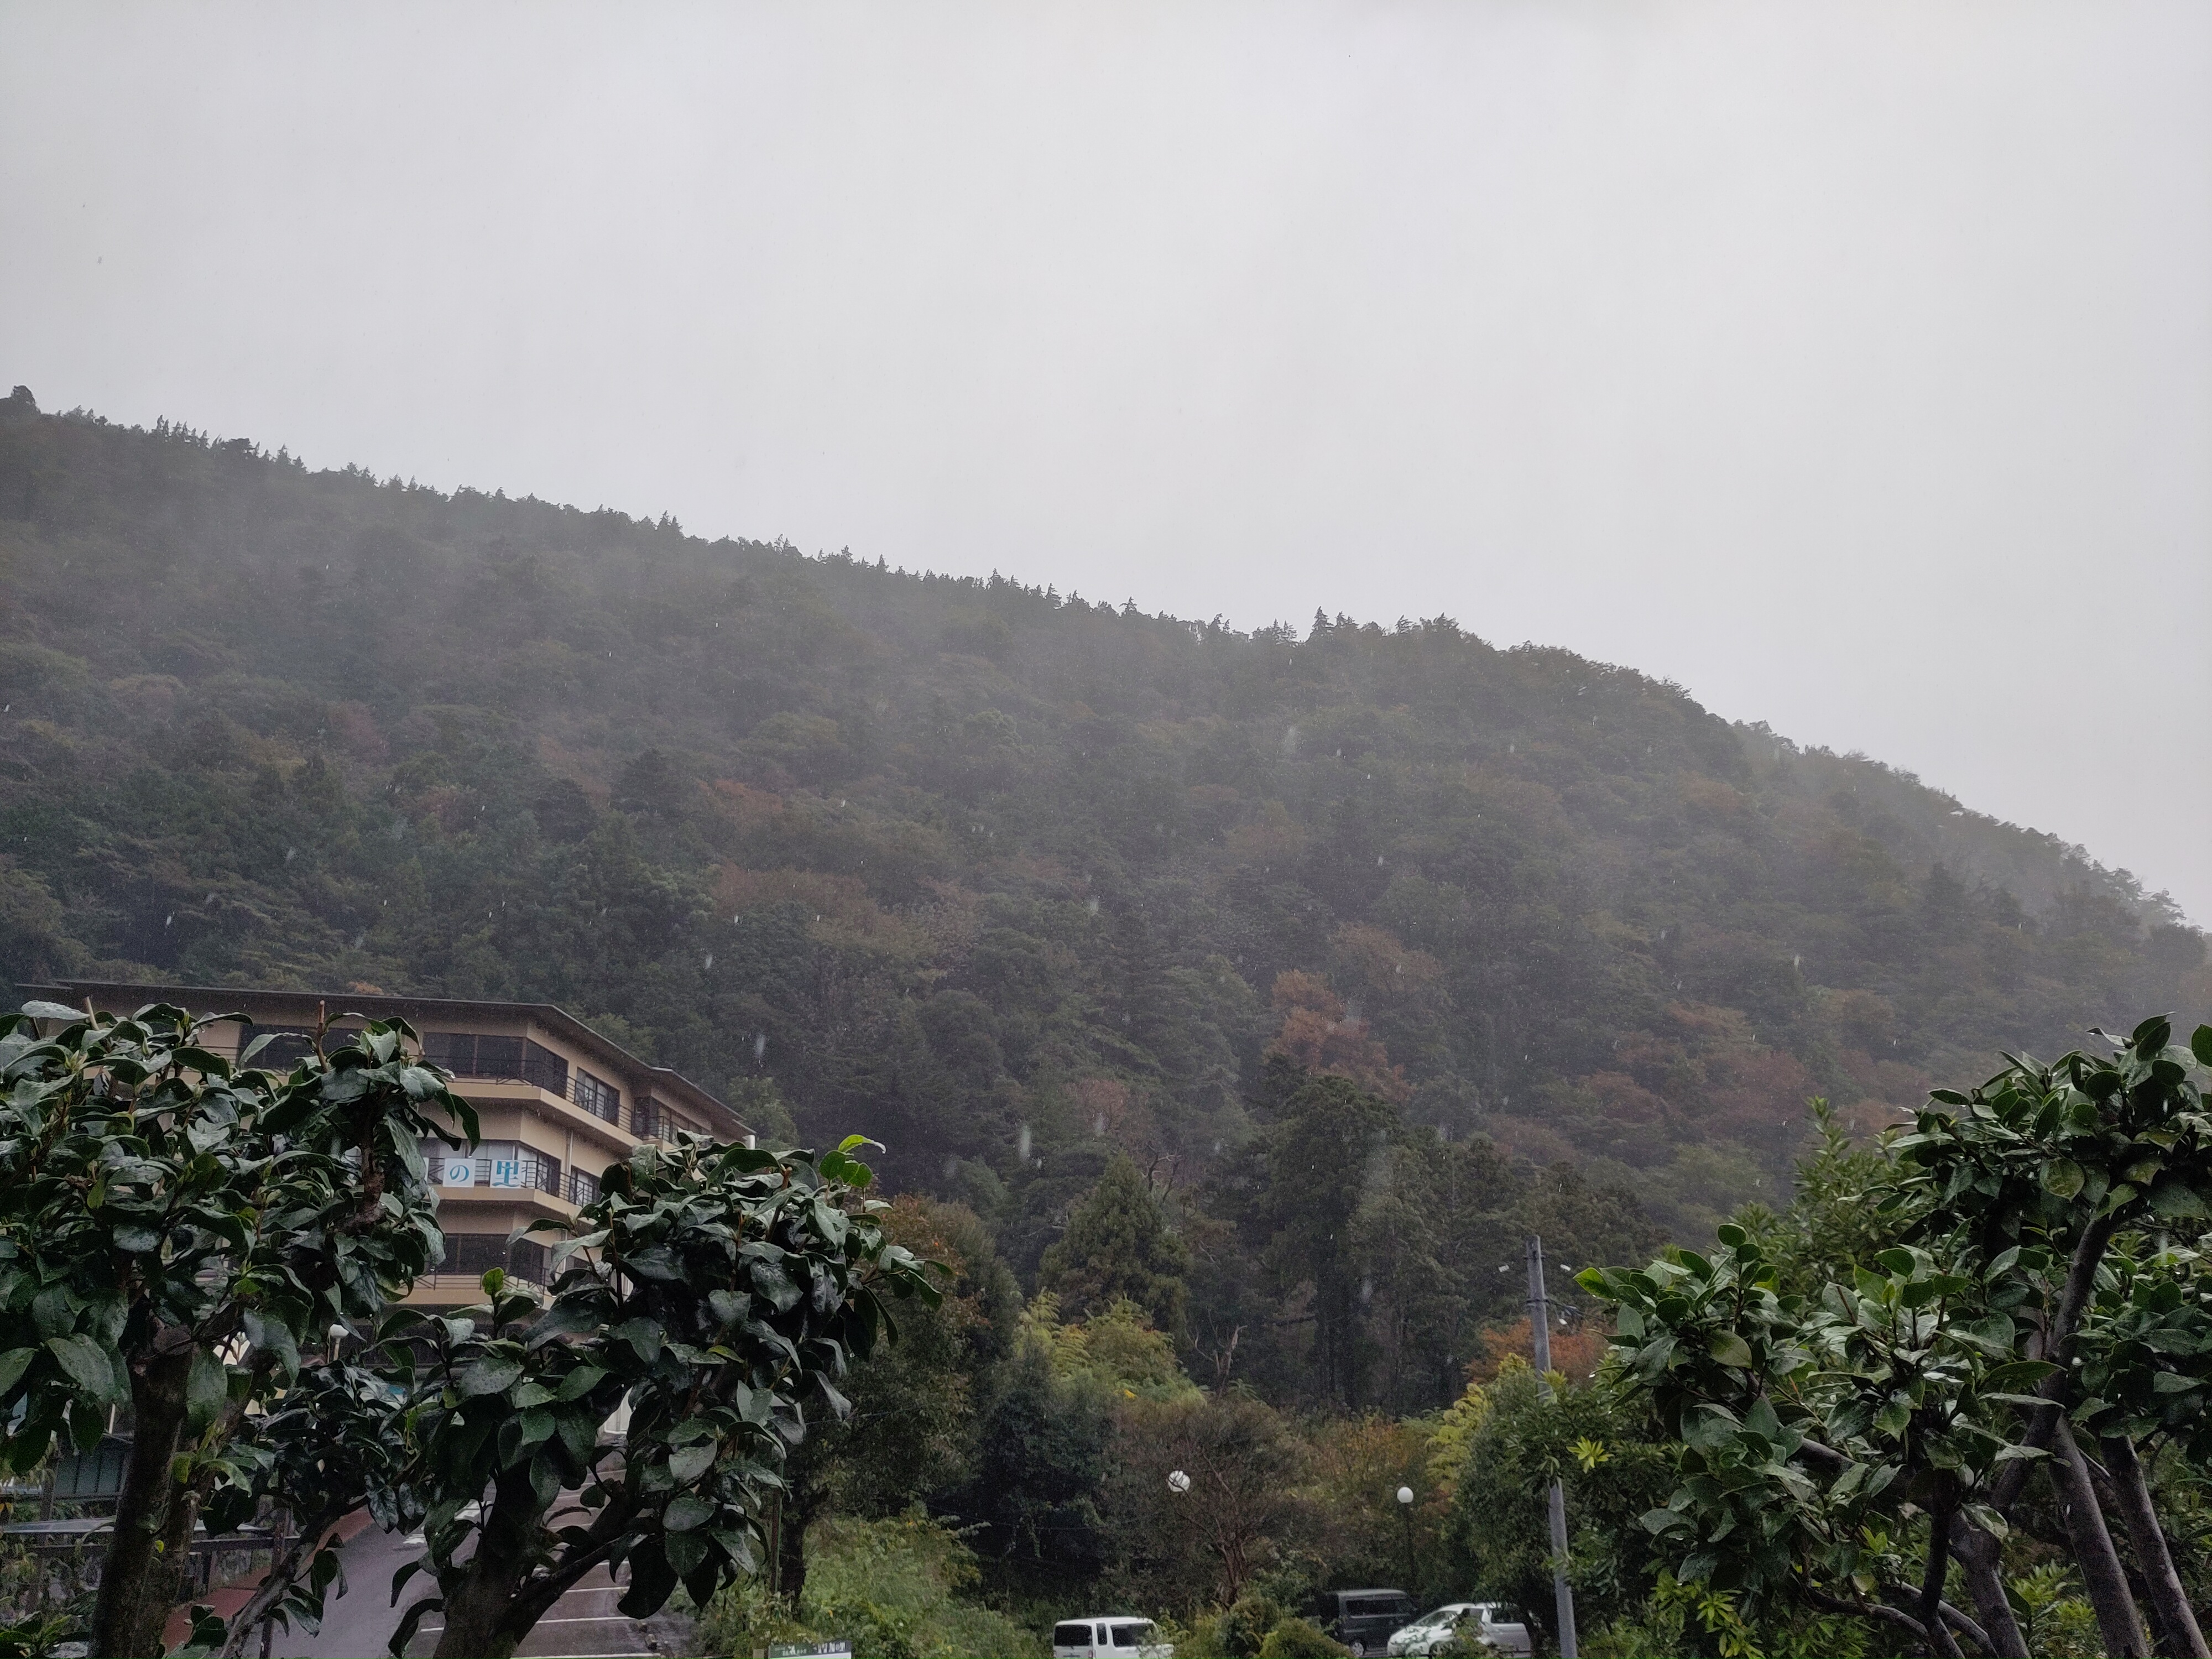 Blick zwischen zwei Büschen auf unser Hotel, das direkt an einem dicht bewachsenen Hügel steht. Im Vordergrund sind Regentropfen zu sehen und der Himmel ist grau.